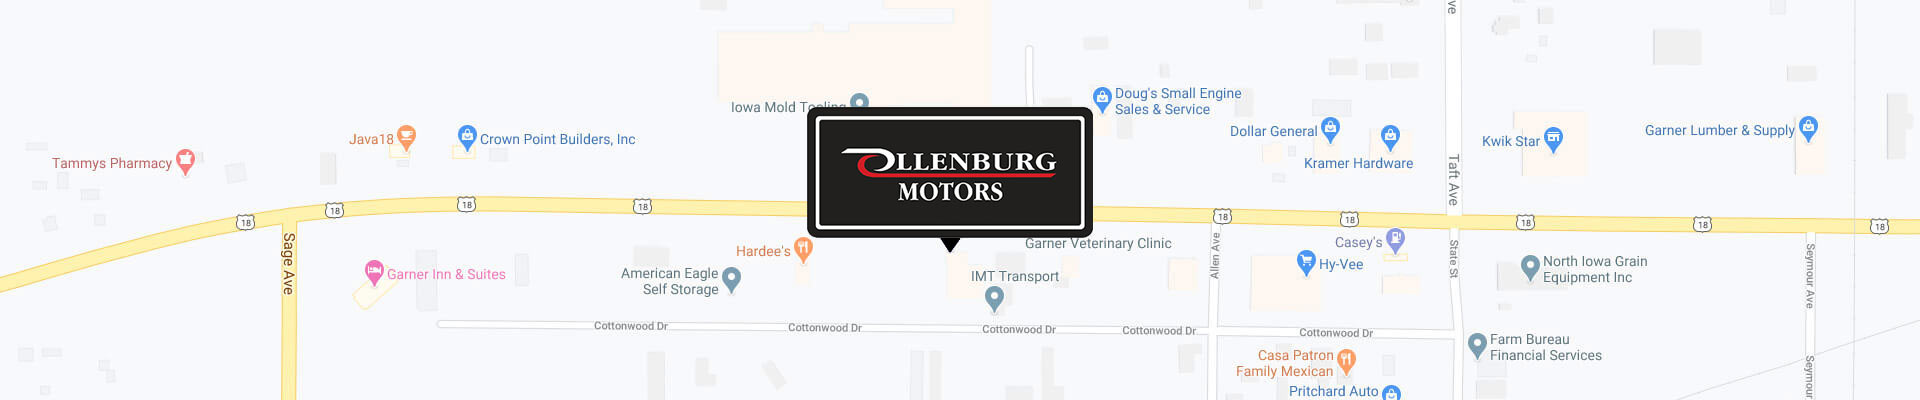 Ollenburg Motors in Garner IA